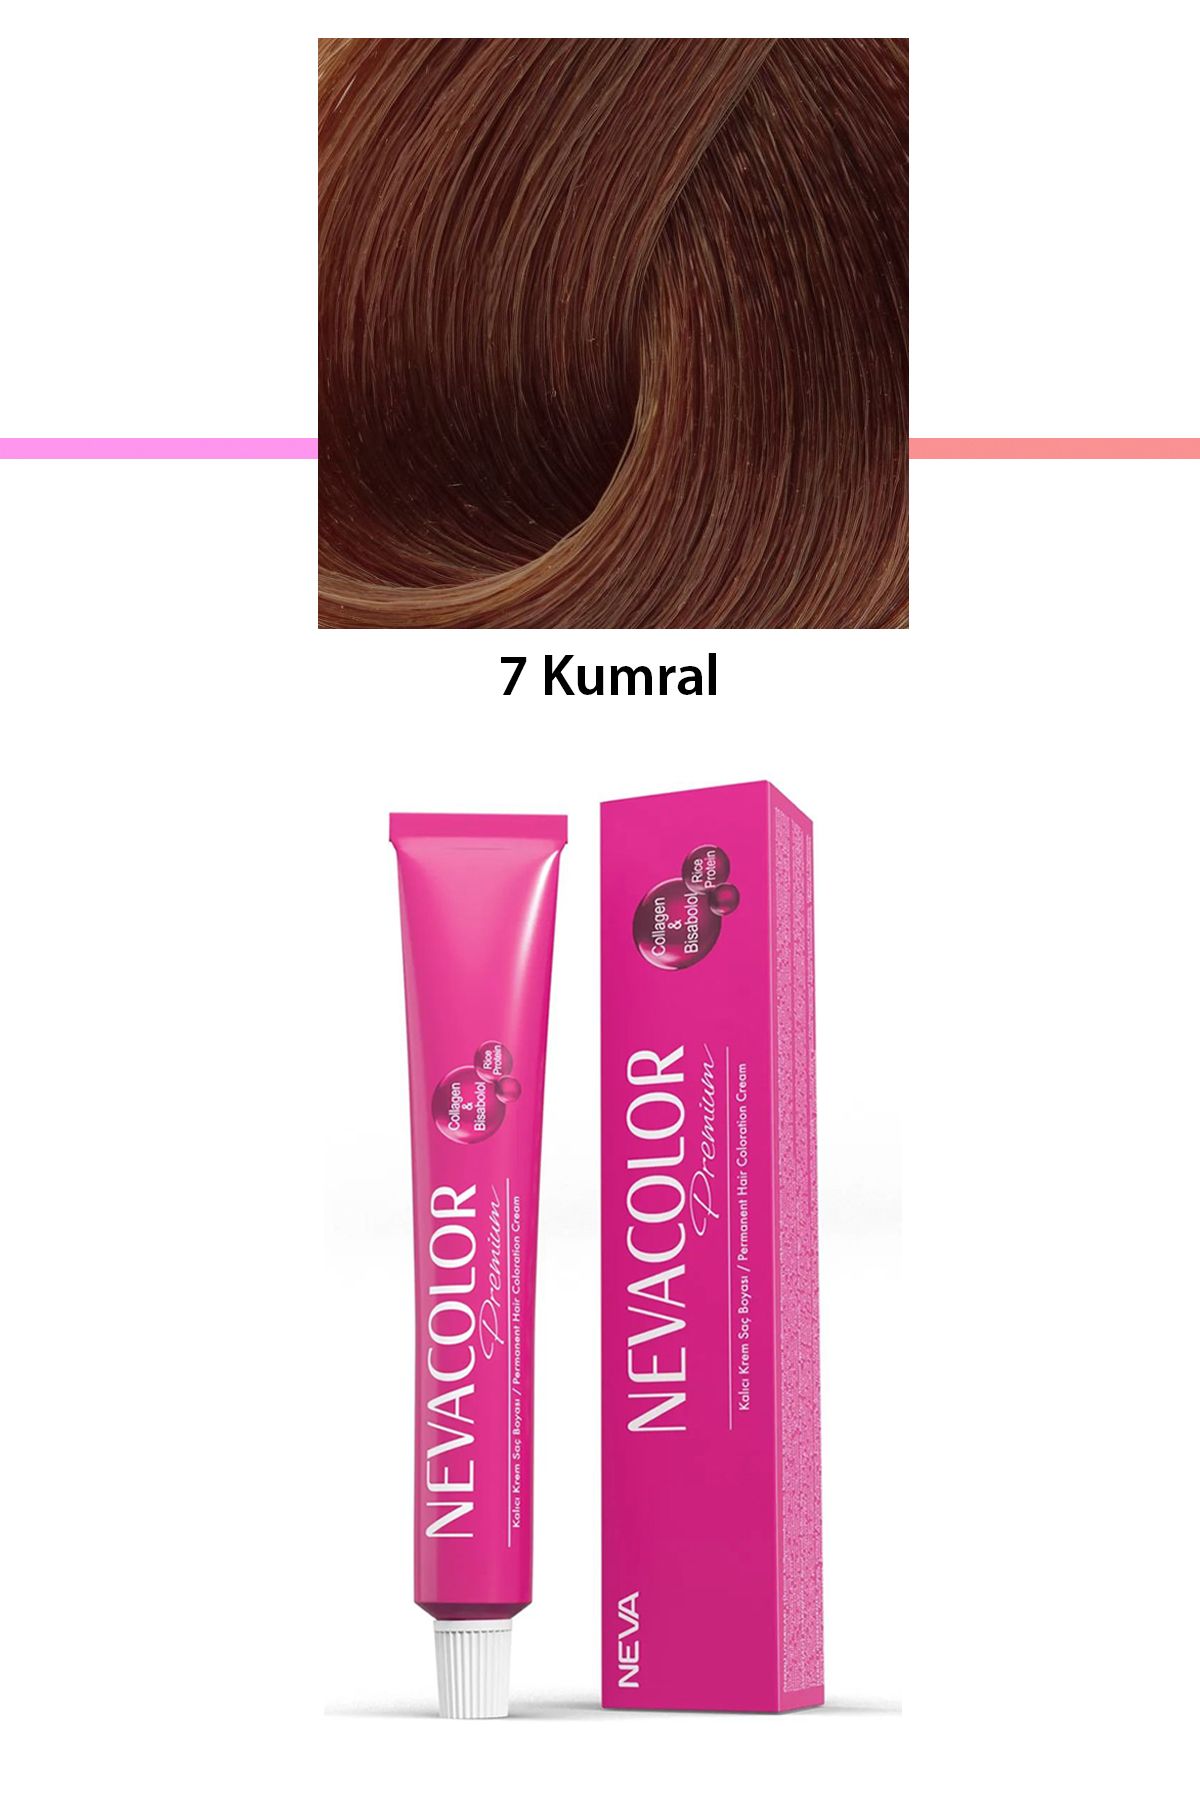 Neva Color Premium 7 Kumral - Kalıcı Krem Saç Boyası 50 g Tüp